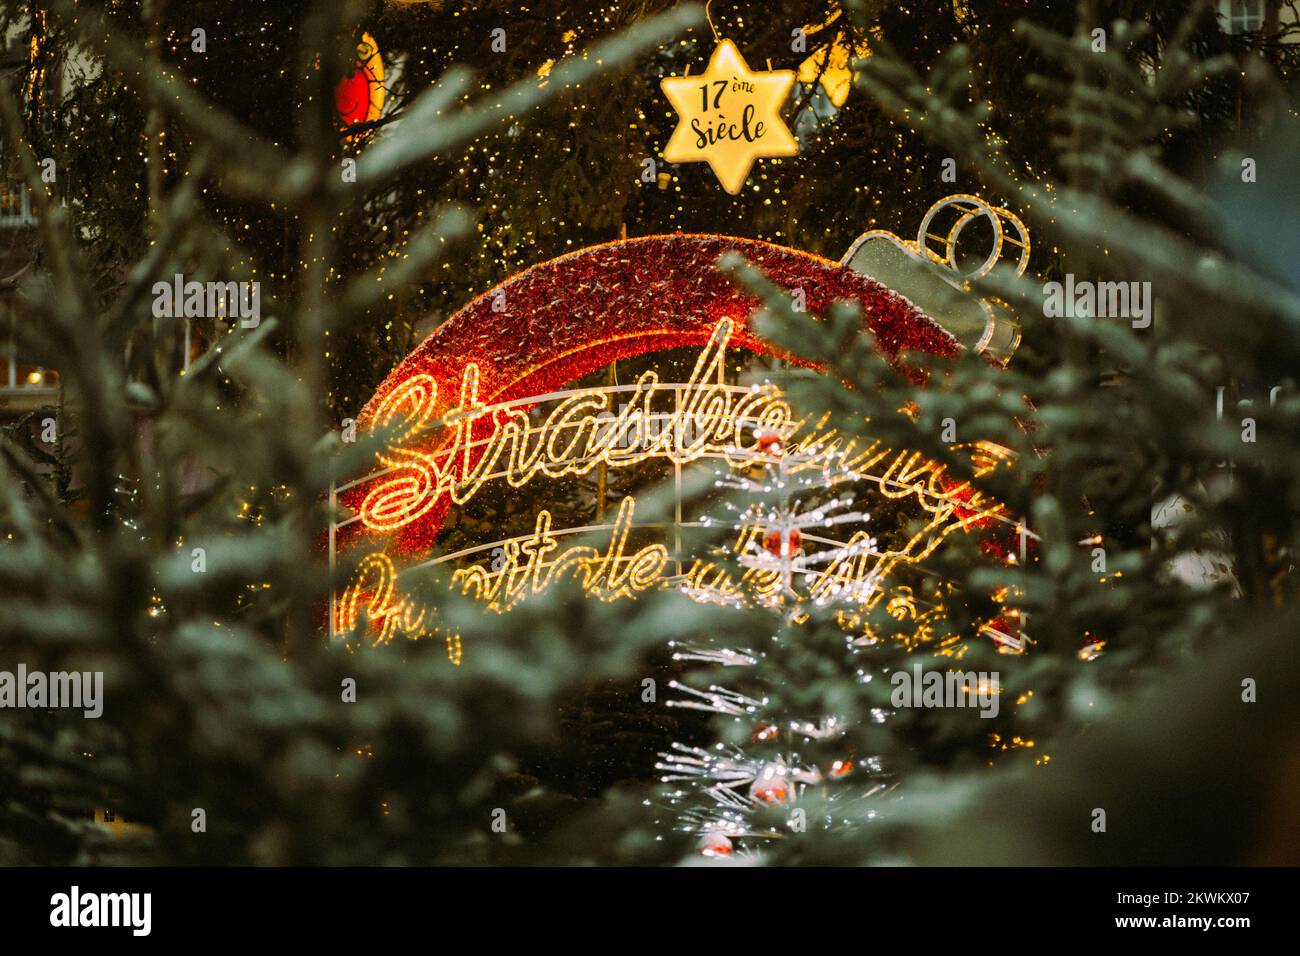 STRASBOURG, FRANCE - décembre 2017 - décorations de boules de Noël et enseigne Strasbourg Capital de Noel dans le centre-ville place Kleber Banque D'Images